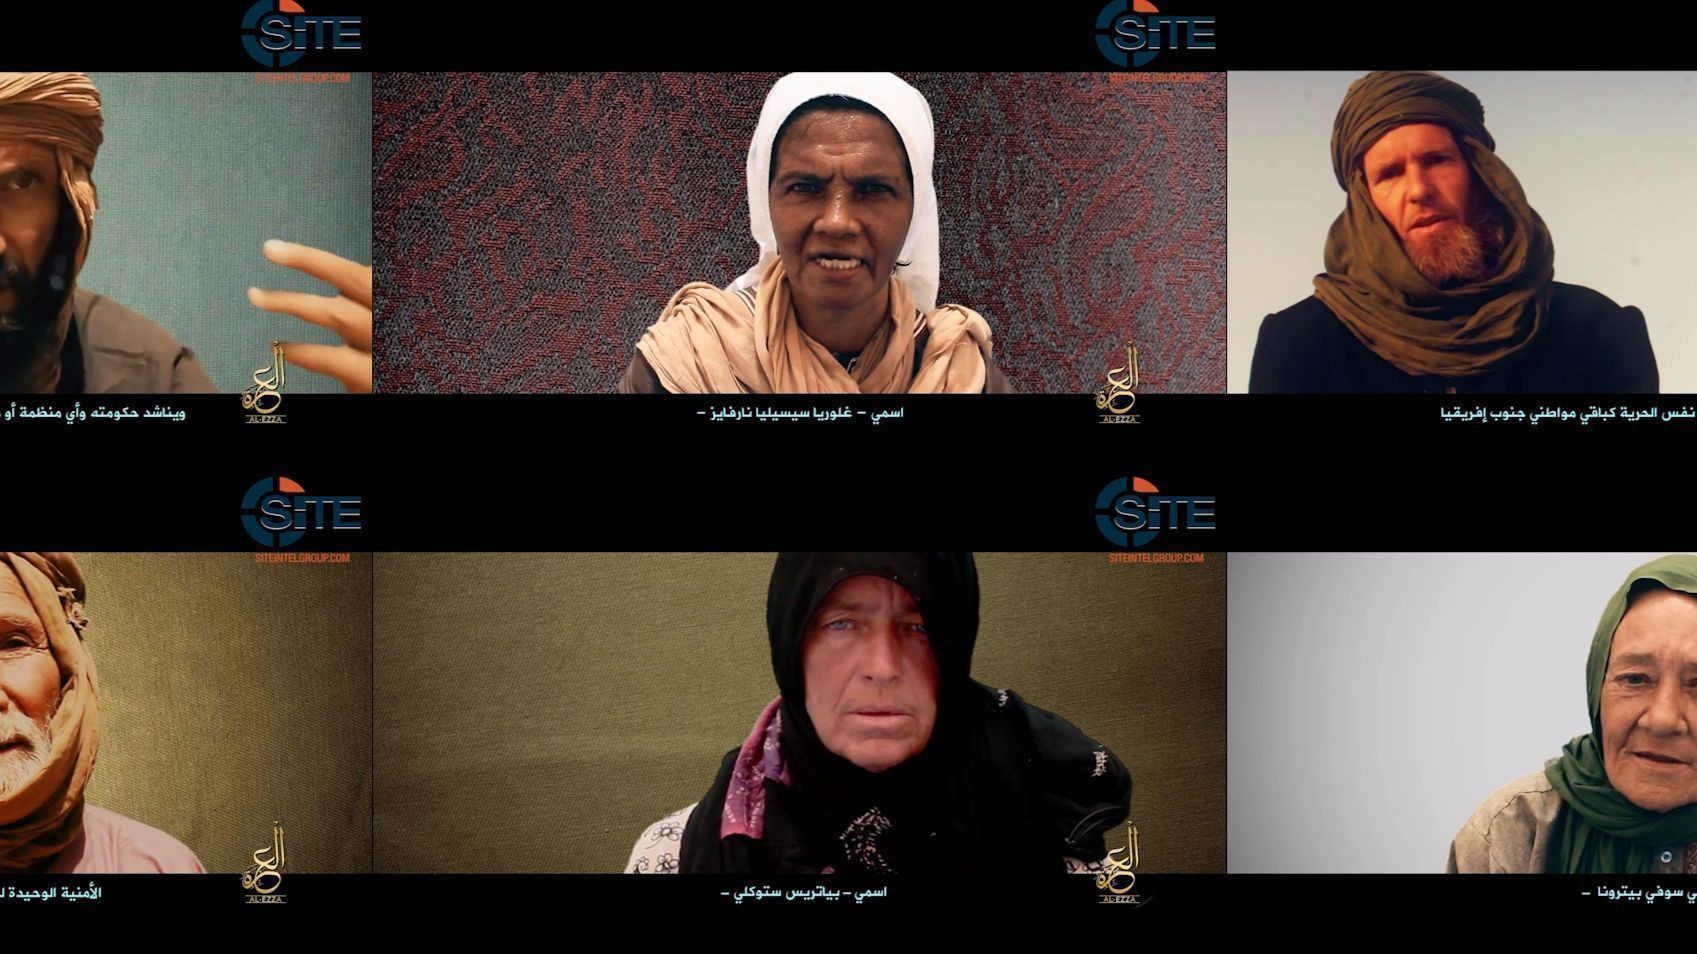 Μάλι: Βίντεο τζιχαντιστών με έξι δυτικούς ομήρους